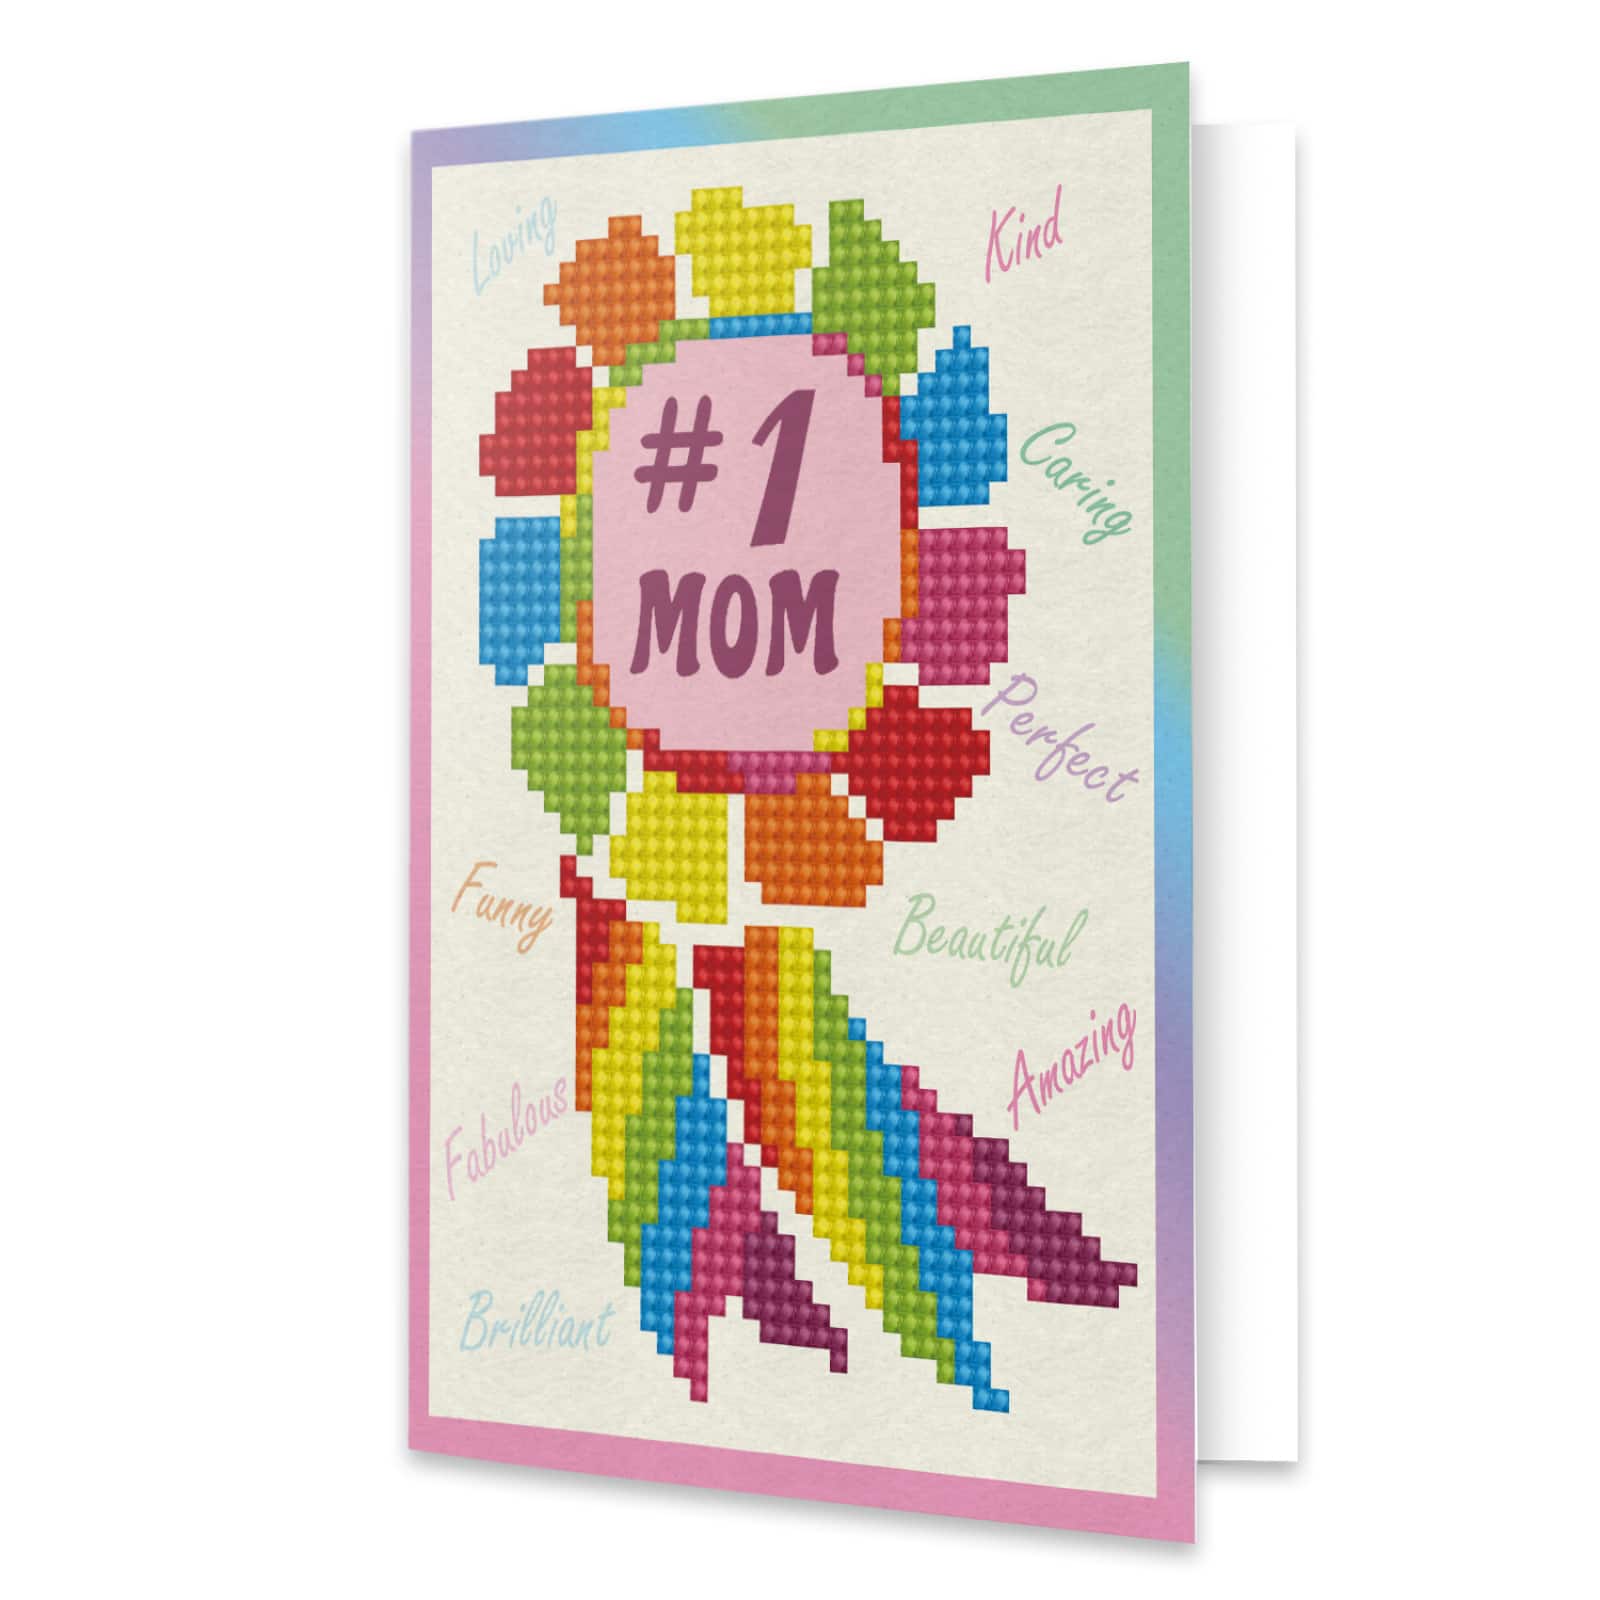 Diamond Dotz&#xAE; Number 1 Mom Diamond Painting Greeting Card Kit